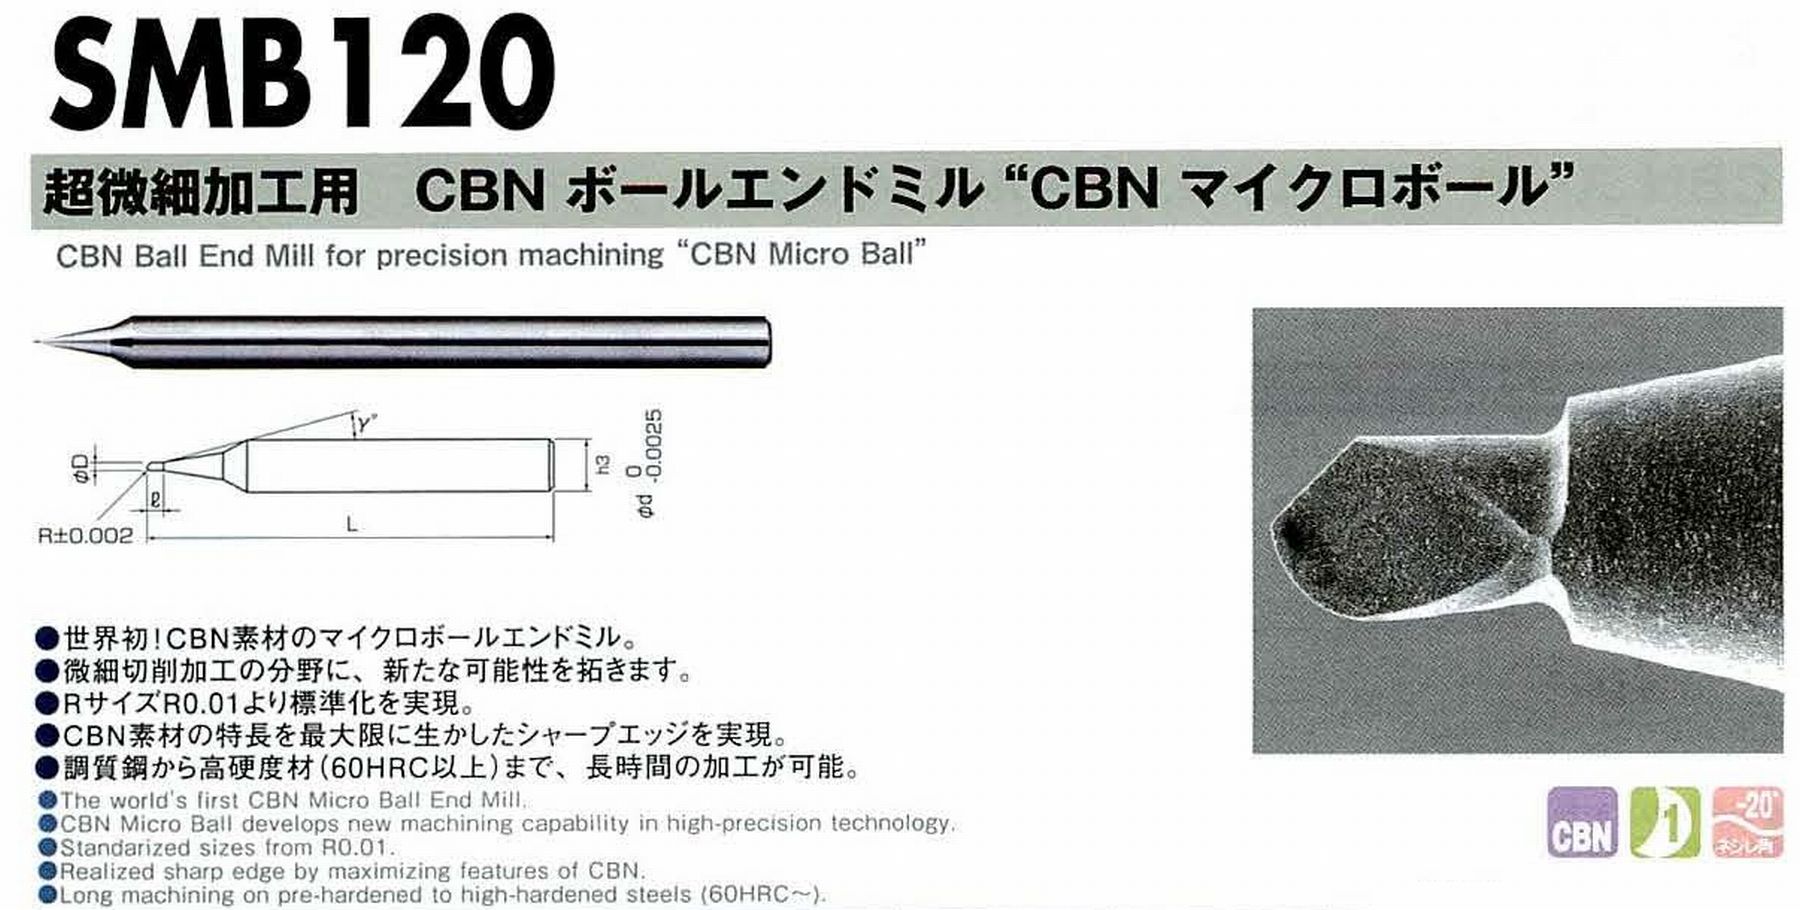 NS 日進工具 SFB200 CBNスーパーフィニッシュボールエンドミル コードNO．01-00500-00300 ボール半径R0.3 有効長1.5 刃長0.5 刃径0.6 首下径0.56 首角12° シャンク径4mm 全長50